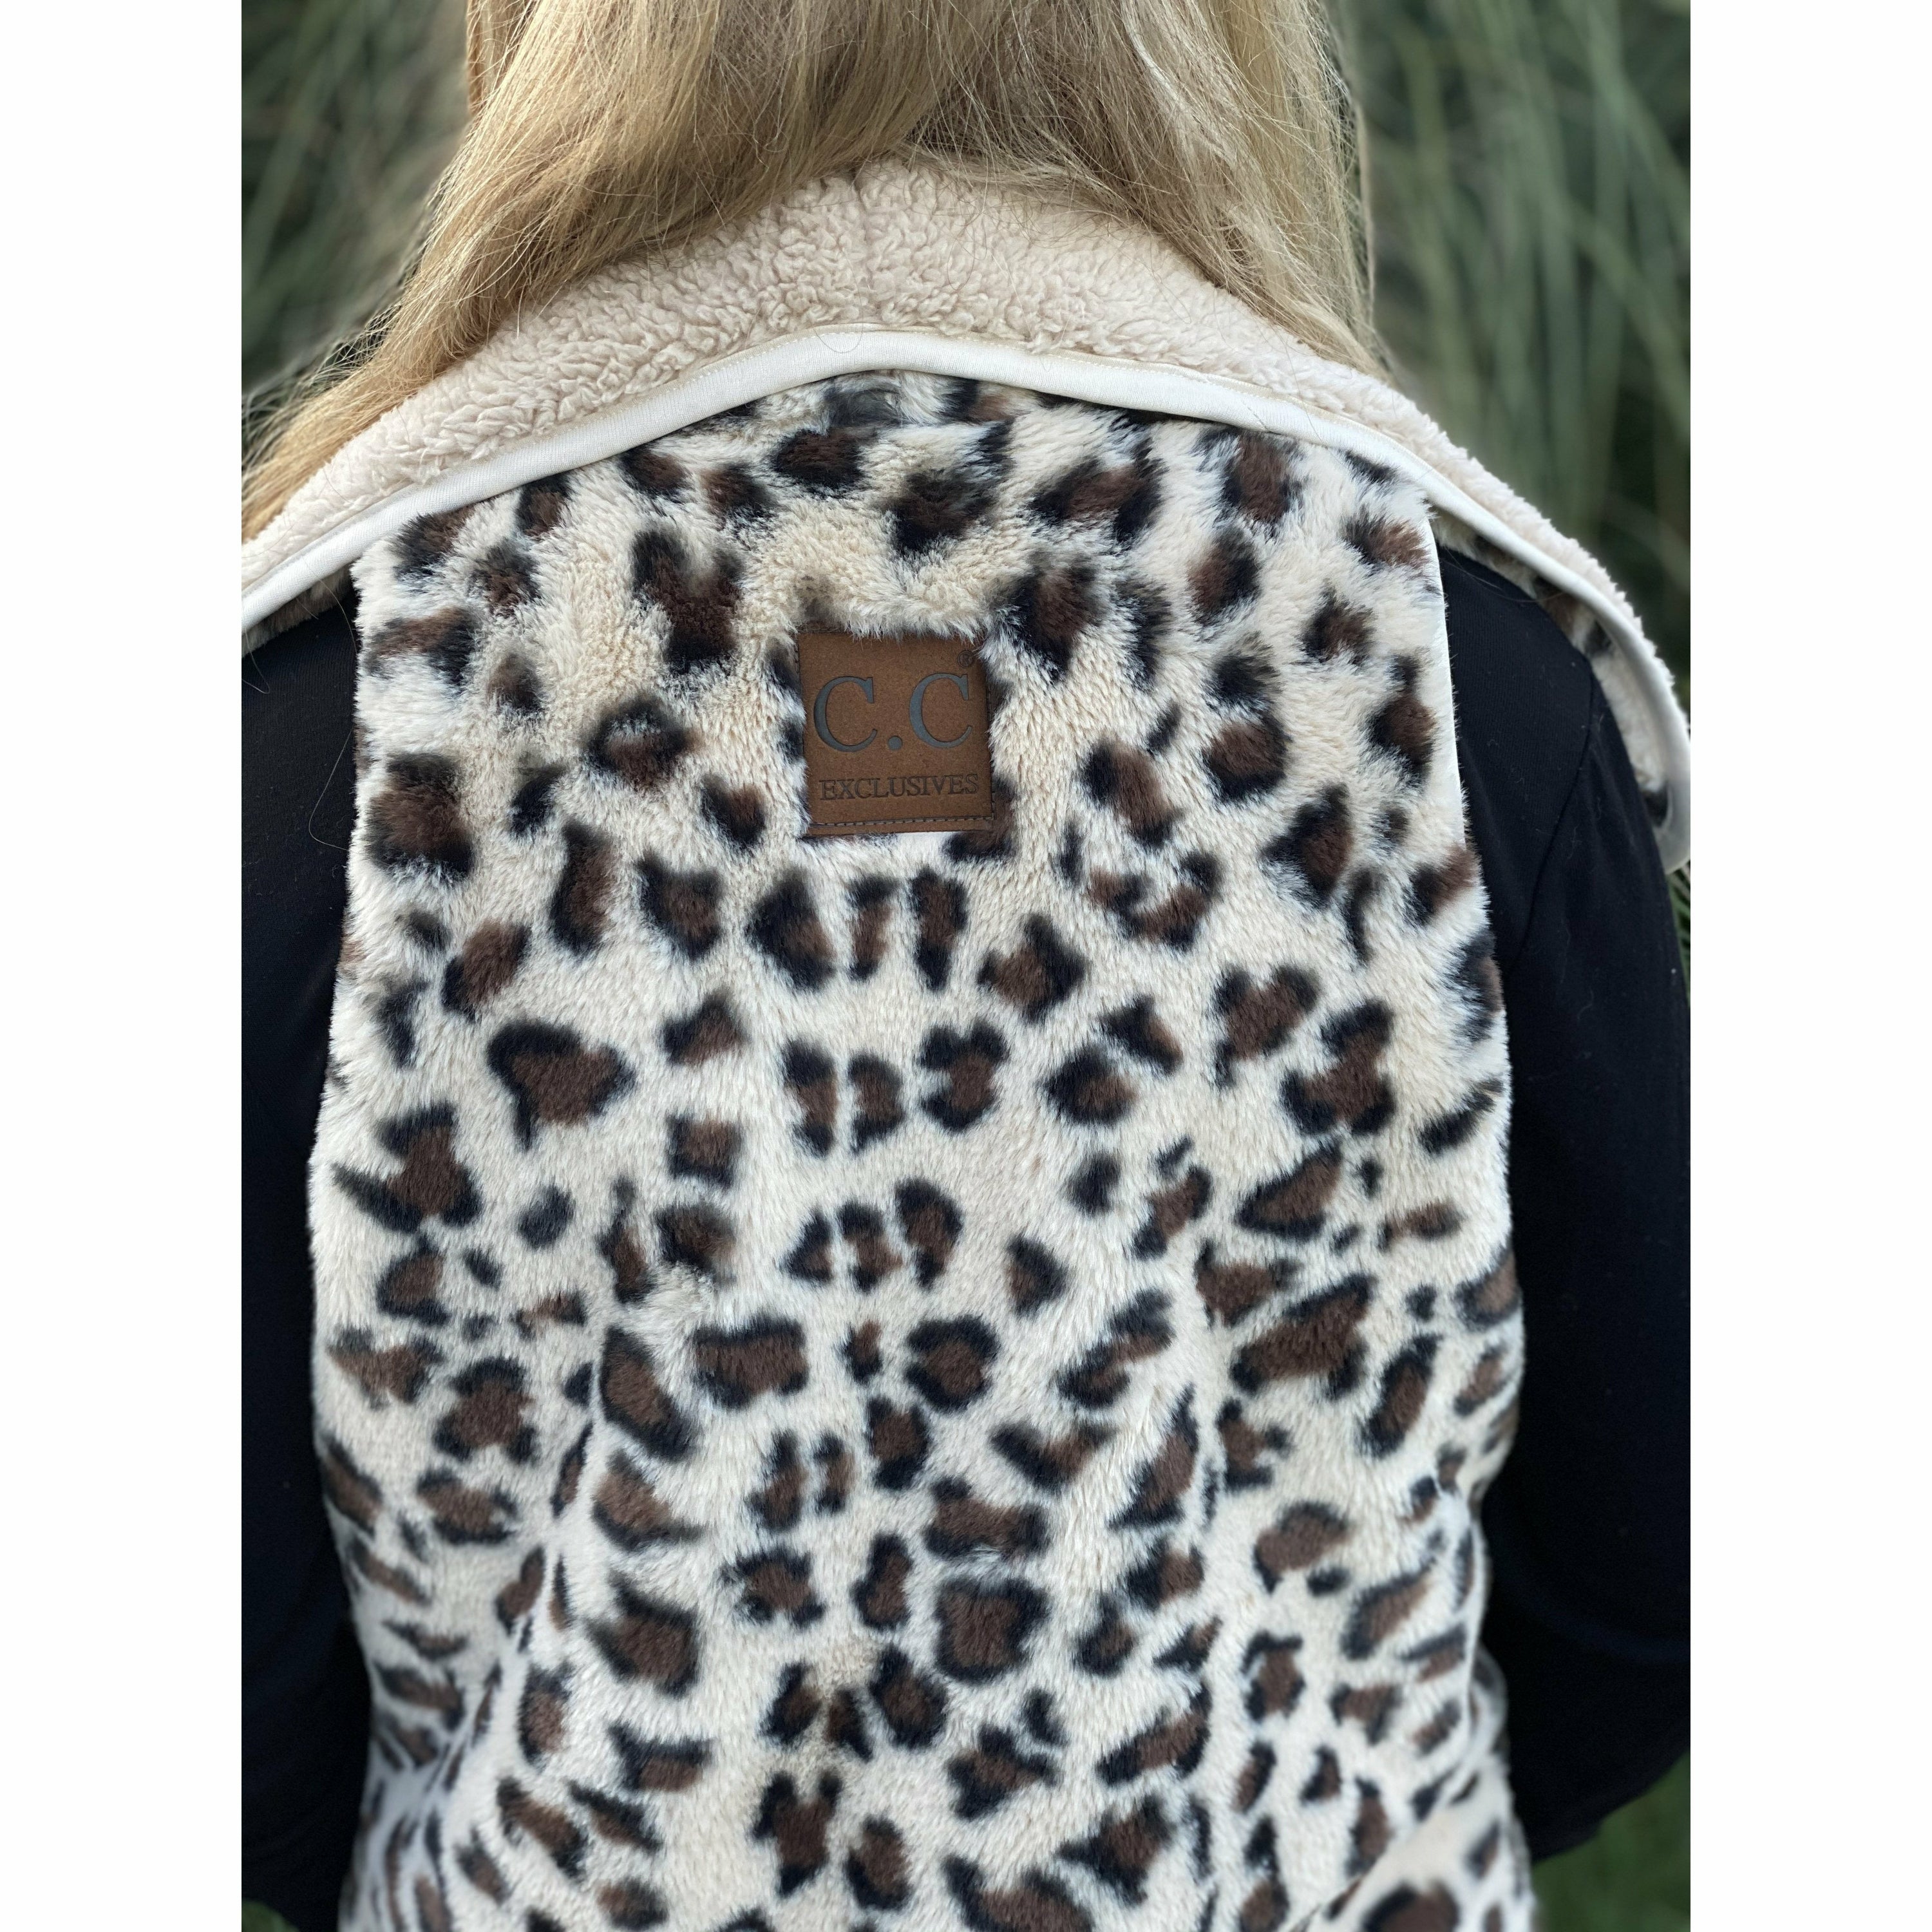 C.C.Beanie Reversible Leopard Print Sherpa/Faux Fur Vest